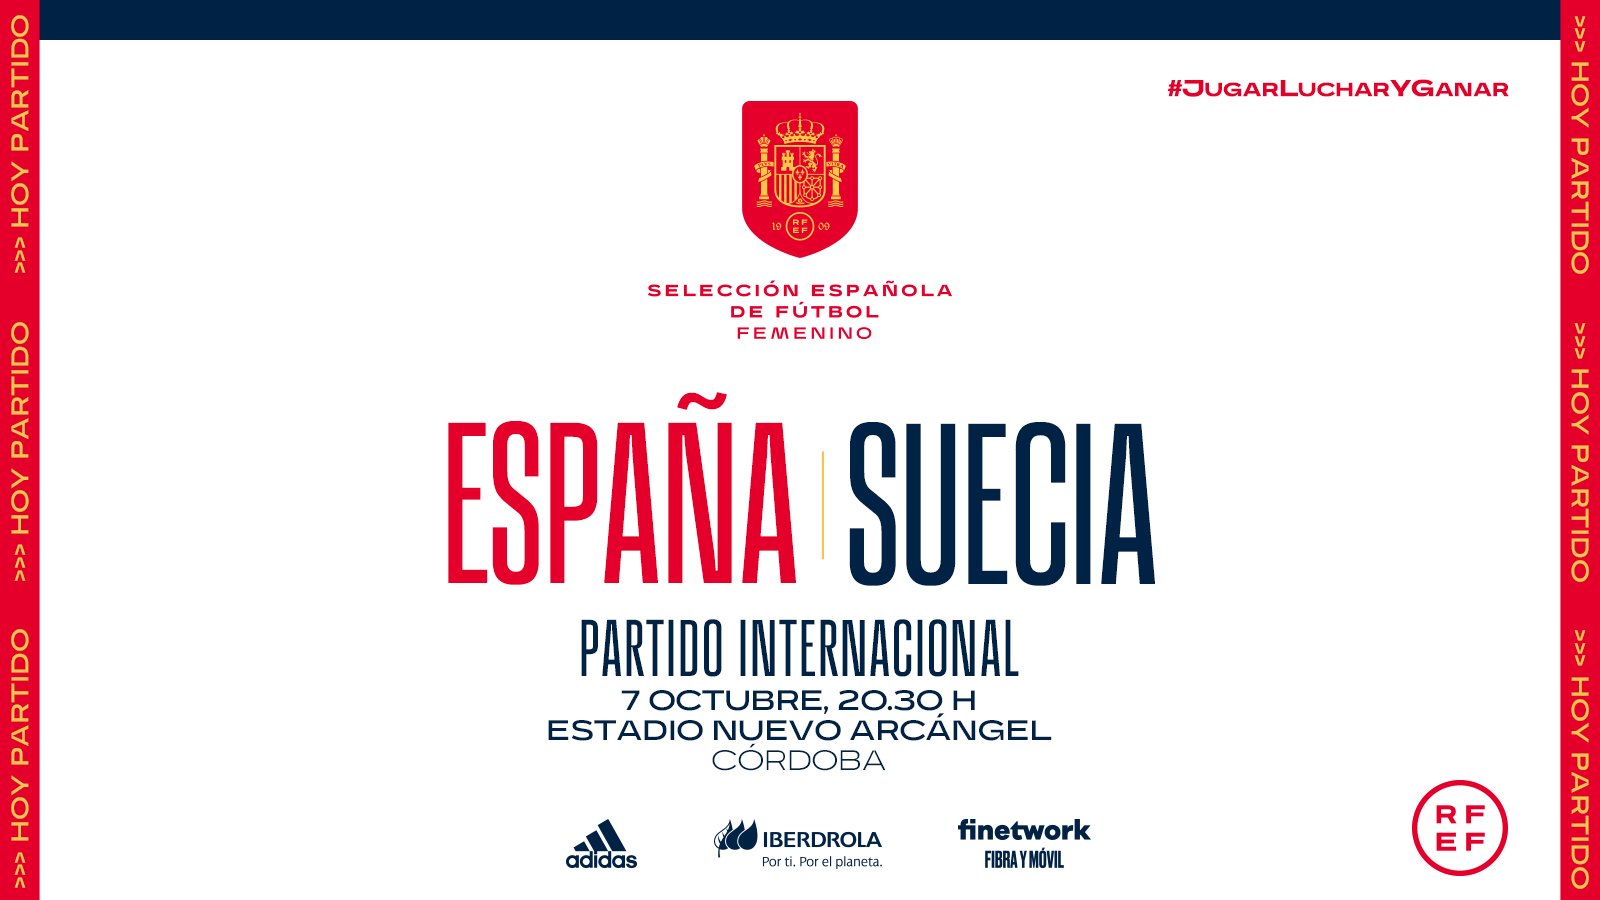 Selección Española Femenina de Fútbol on Twitter: "🚨¡¡𝗛𝗢𝗬 𝗝𝗨𝗚𝗔𝗠𝗢𝗦!! ⚽ España - Suecia 🤝 Amistoso 🕘 20:30 peninsular española) 🏟 Estadio El Arcángel 📺 @teledeporte 👩‍💻 PREVIA: https://t.co/BILwkigcKD #JugarLucharyGanar https://t ...